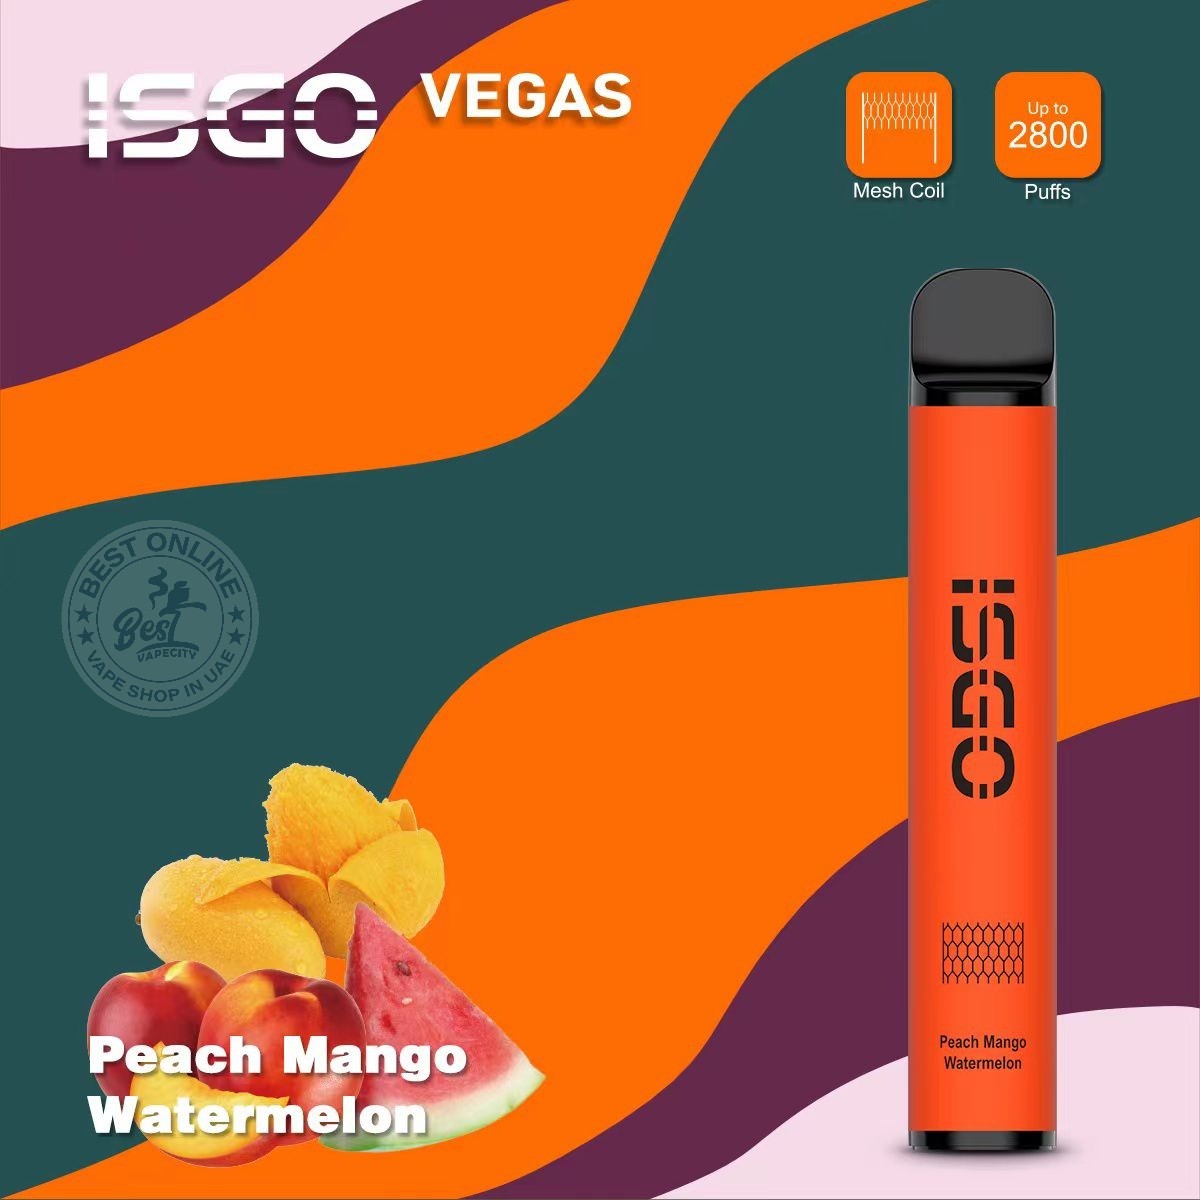 Isgo vegas disposable 2800 puffs- Peach Mango Watermelon